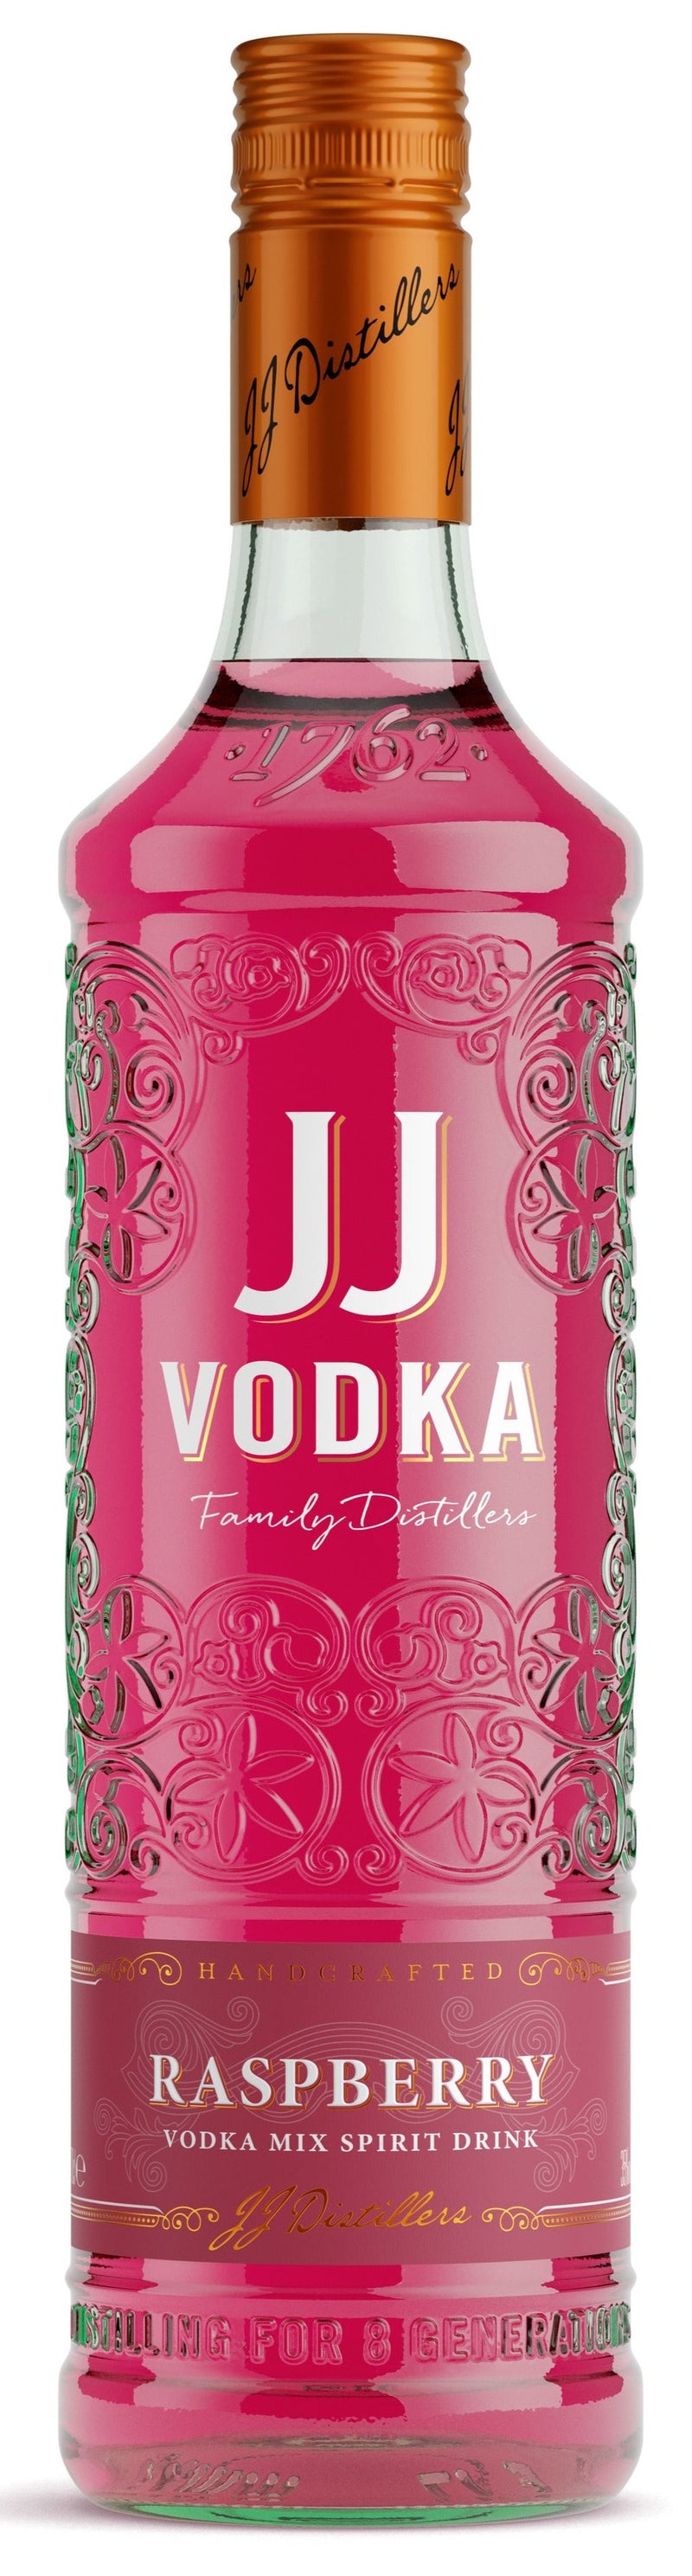 J.J. Whitley Raspberry Vodka 70cl